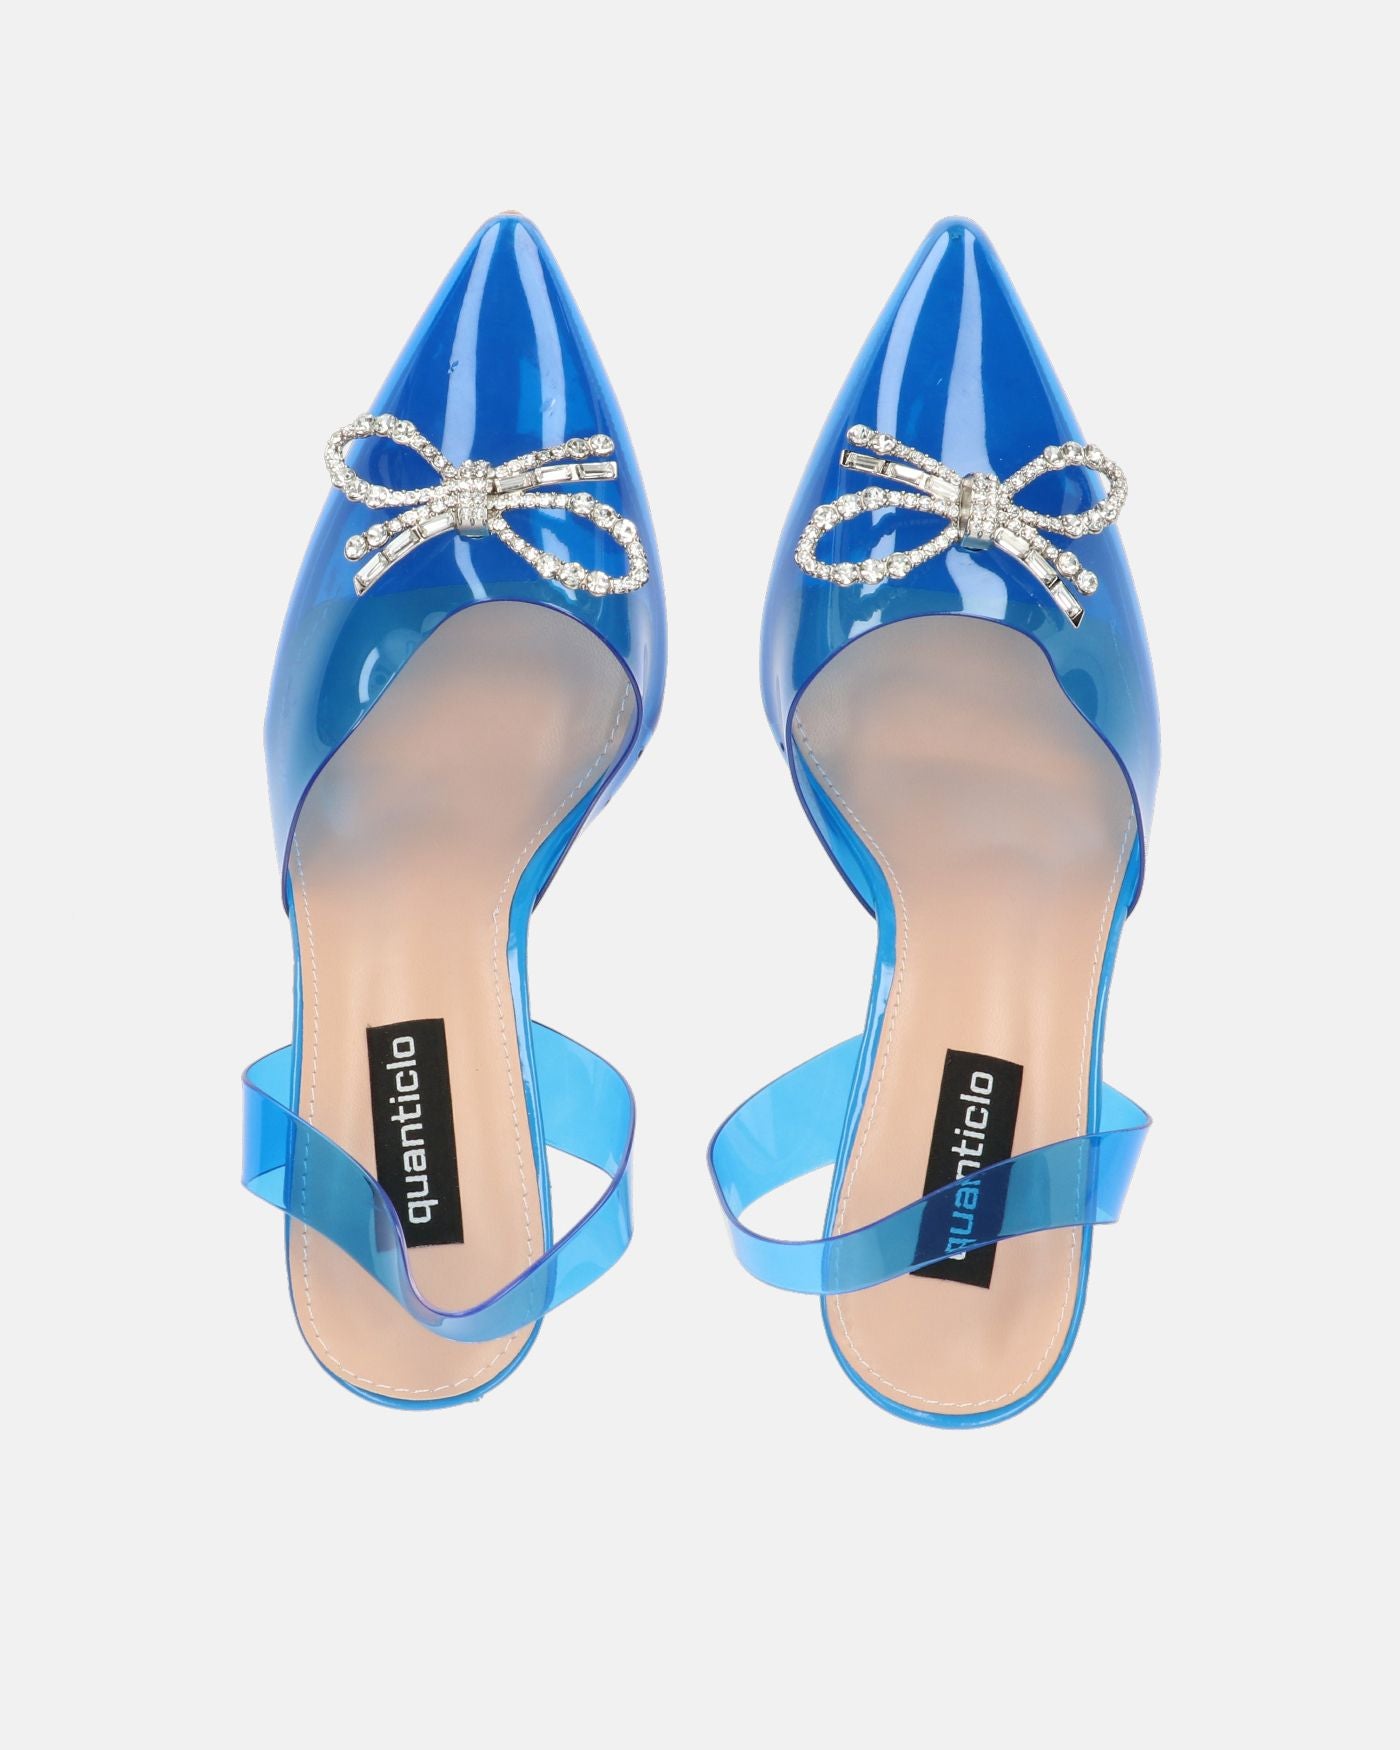 CONSUELO - talons en plexiglas bleu avec décorations aux orteils